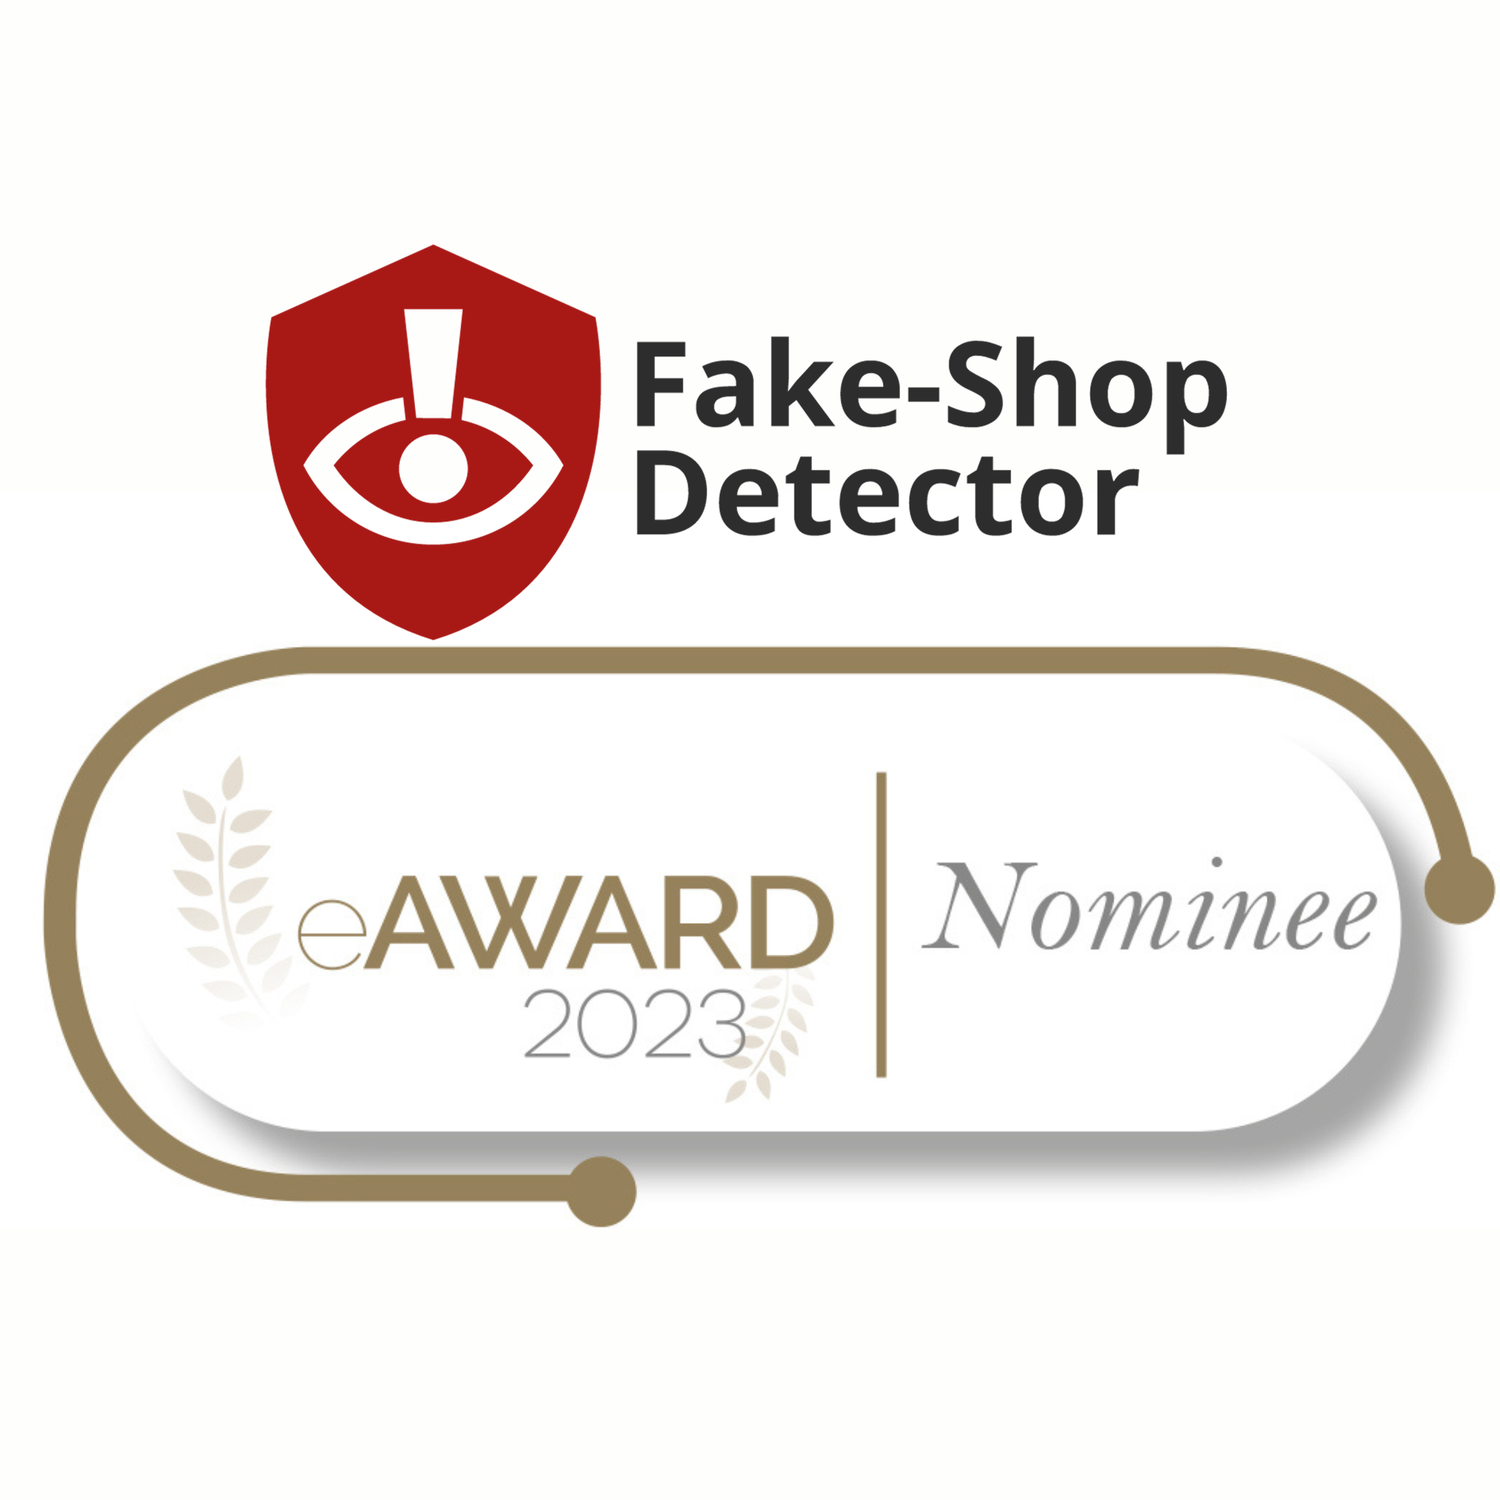 Fake-Shop Detector nominiert für den eAward